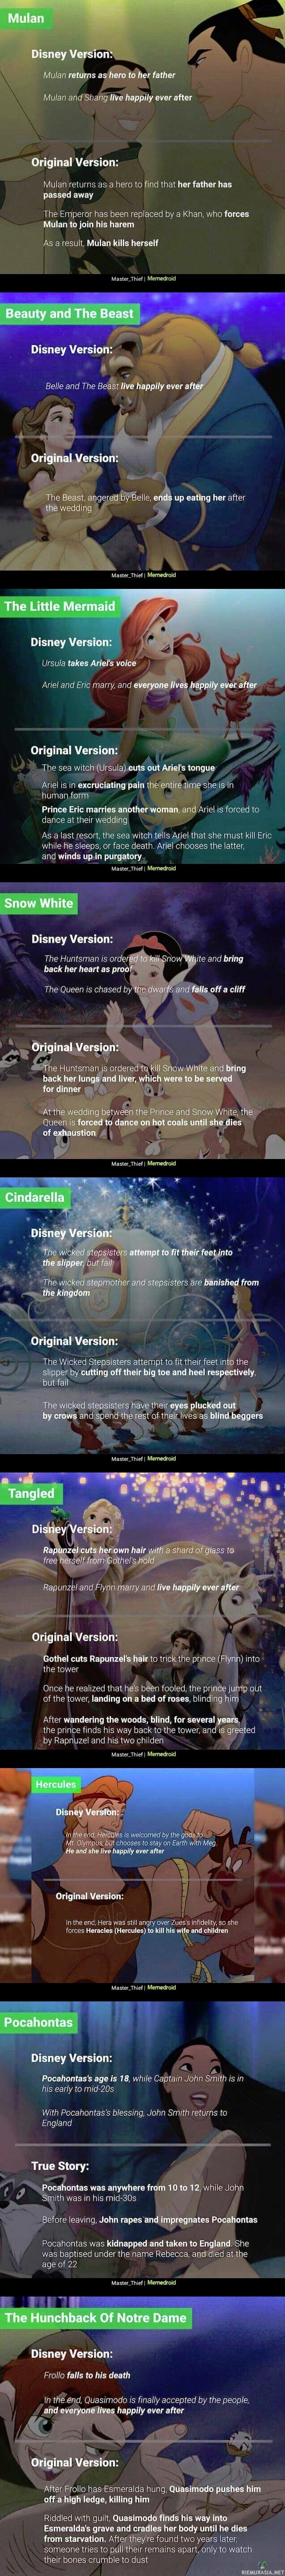 Disney Original